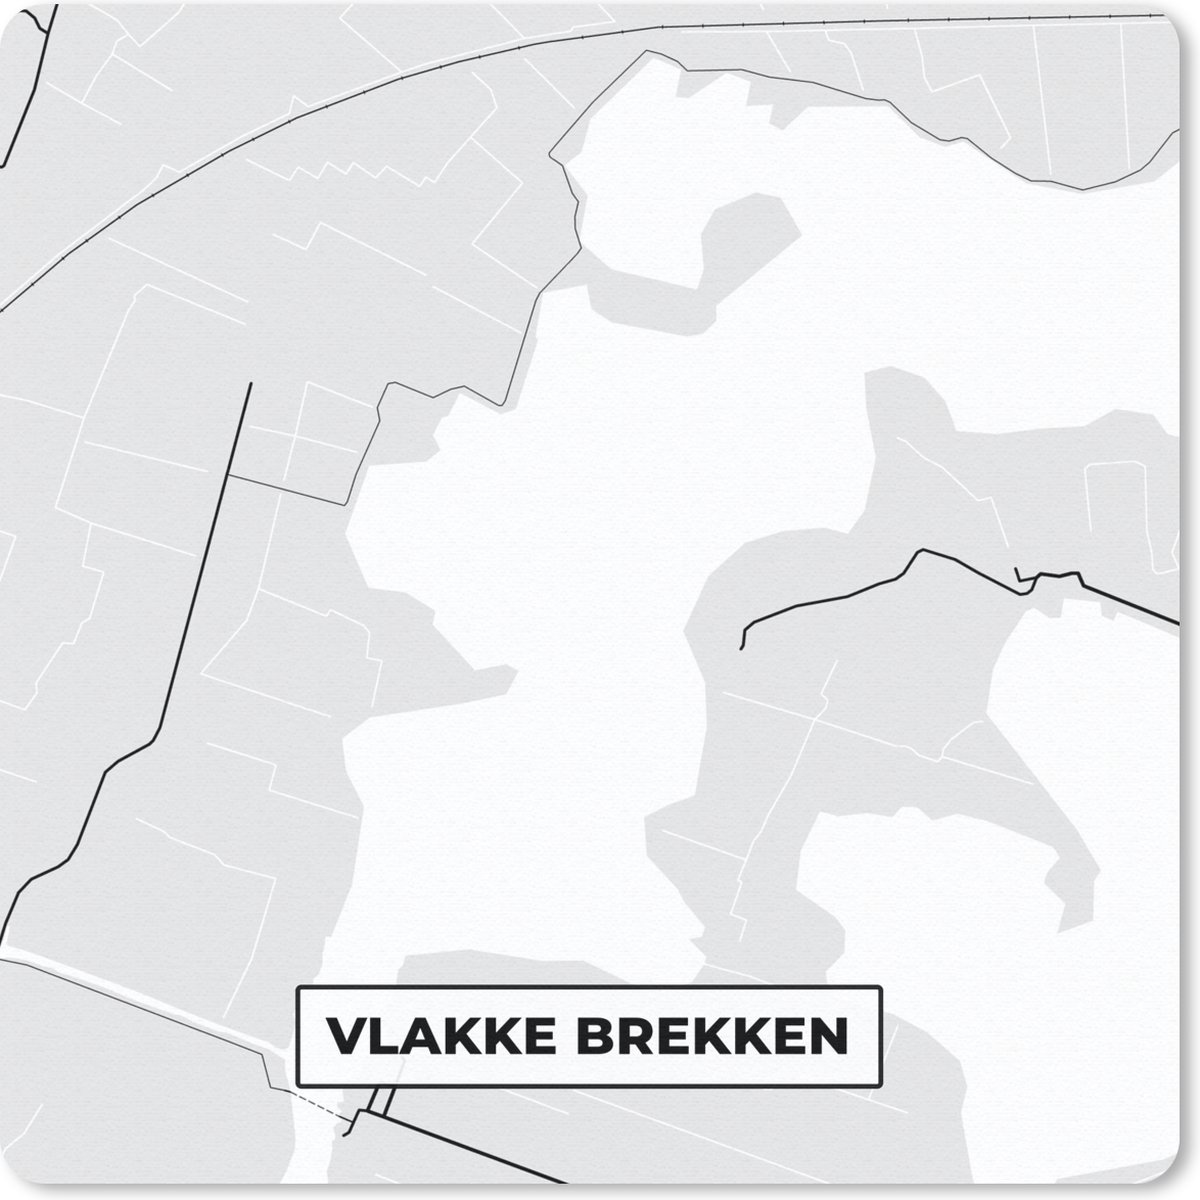 Muismat Klein - Nederland - Vlakke Brekken - Kaart - Plattegrond - Stadskaart - 20x20 cm